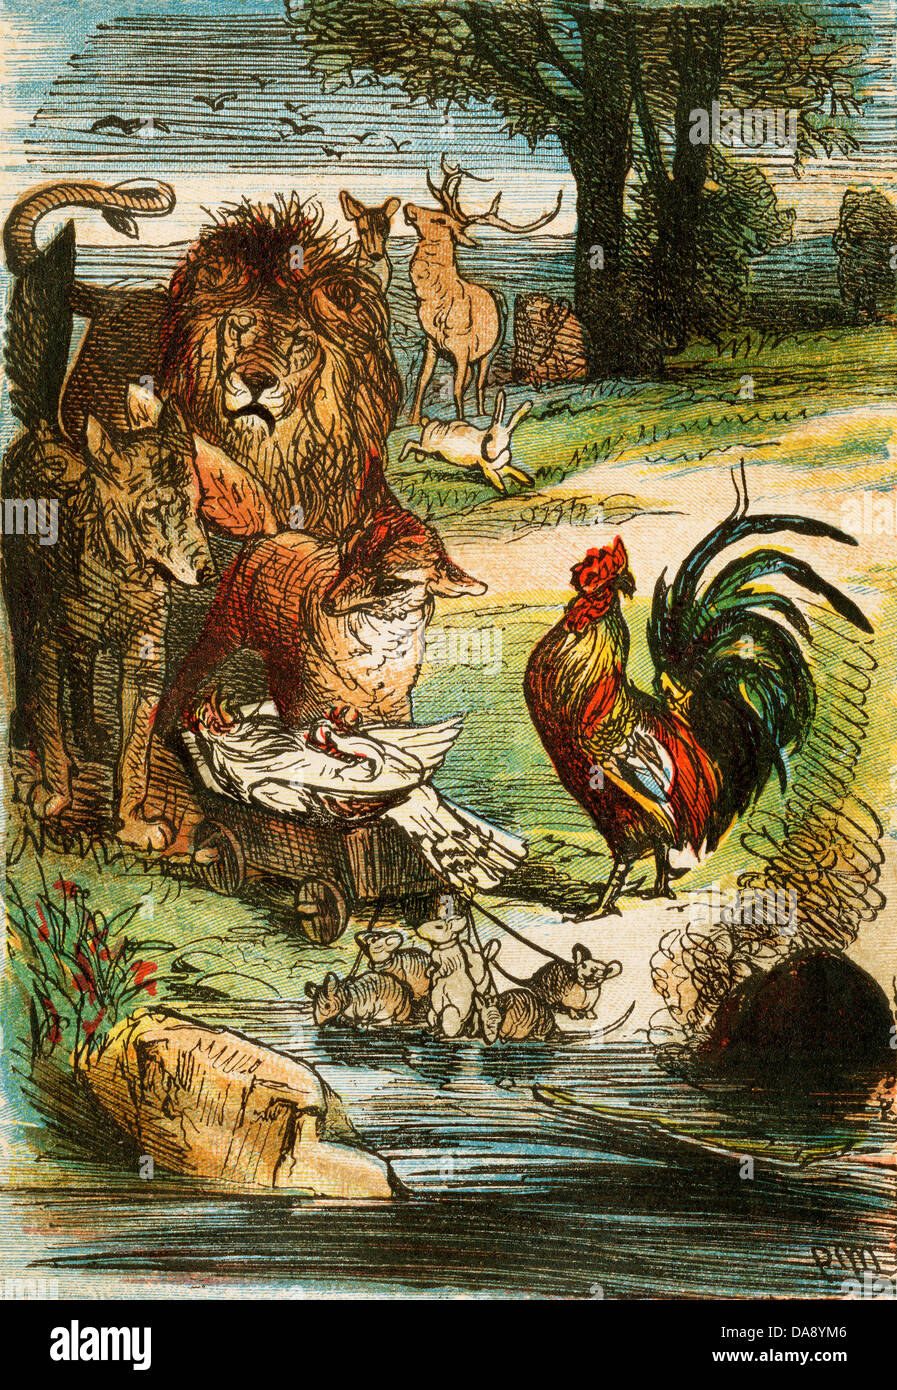 La mort d'un poulet, d'un Berlin d'édition des Contes de Grimm, 1865. Illustration couleur d'origine Banque D'Images